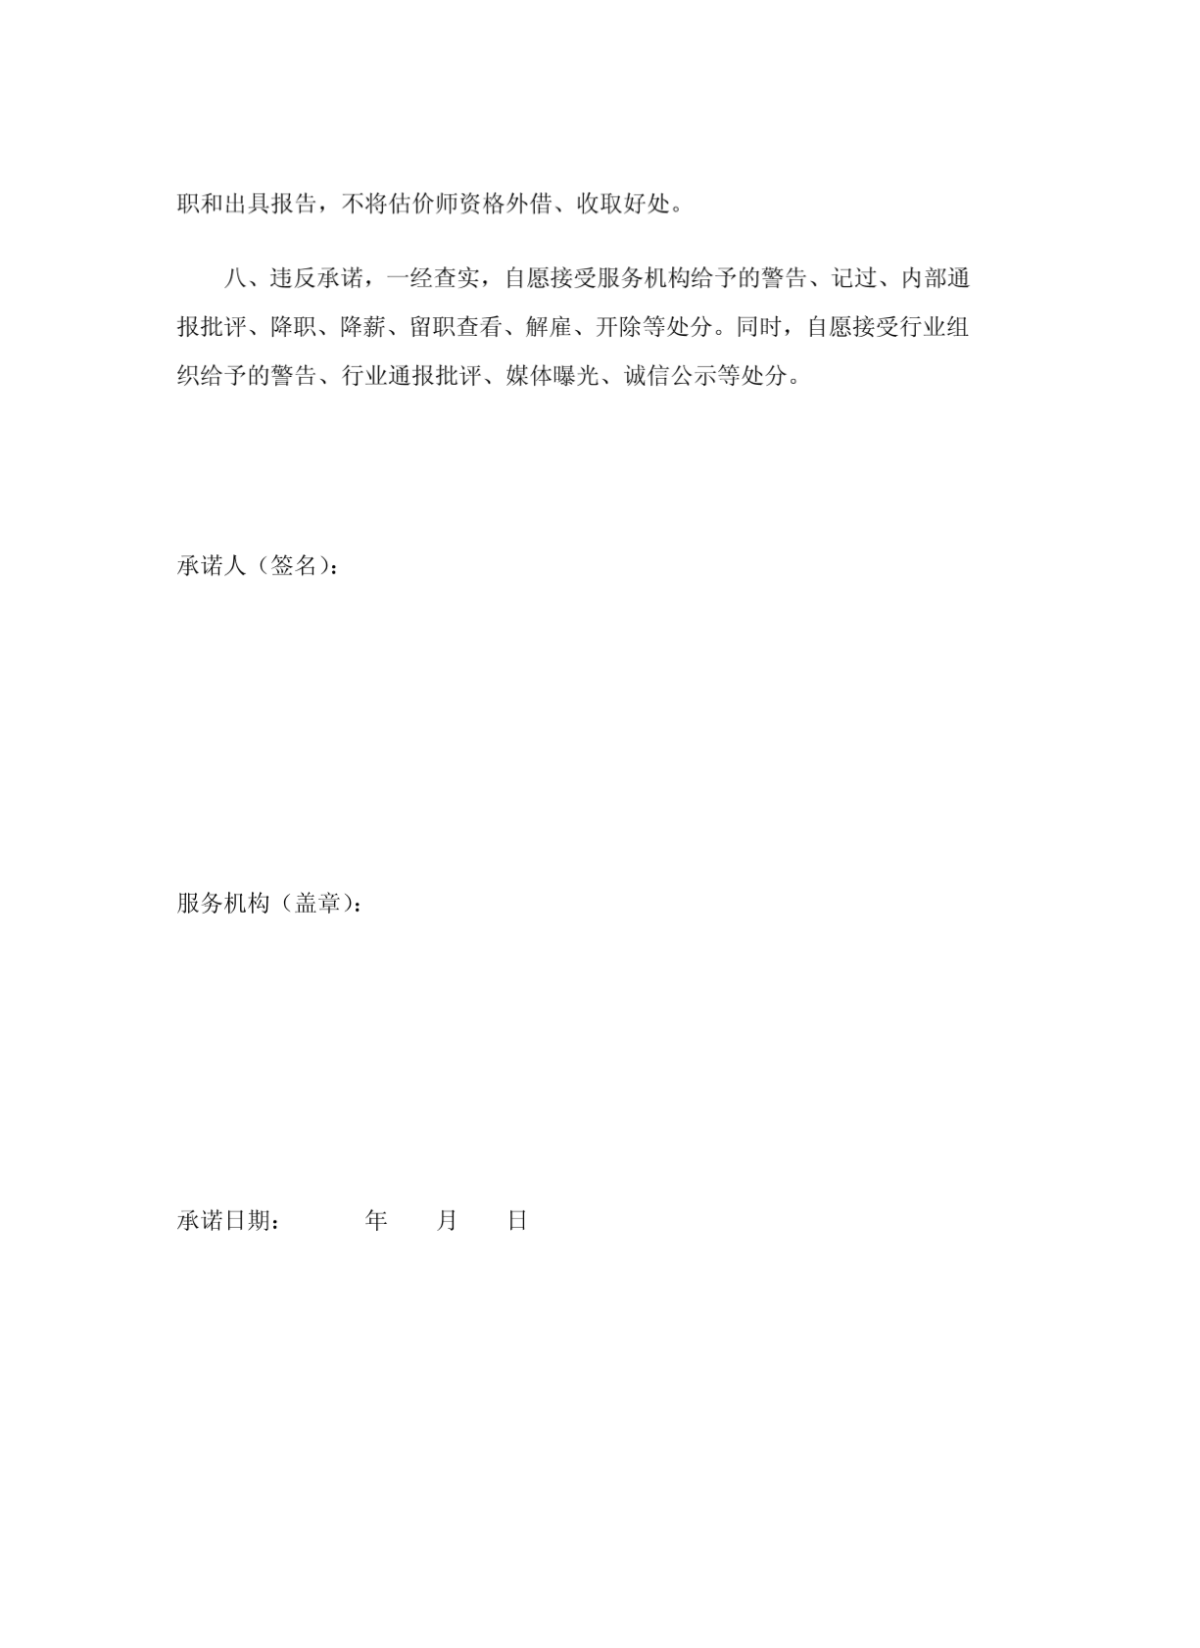 深圳市不动产估价人员规范执业行为反商业贿赂承诺书-图二